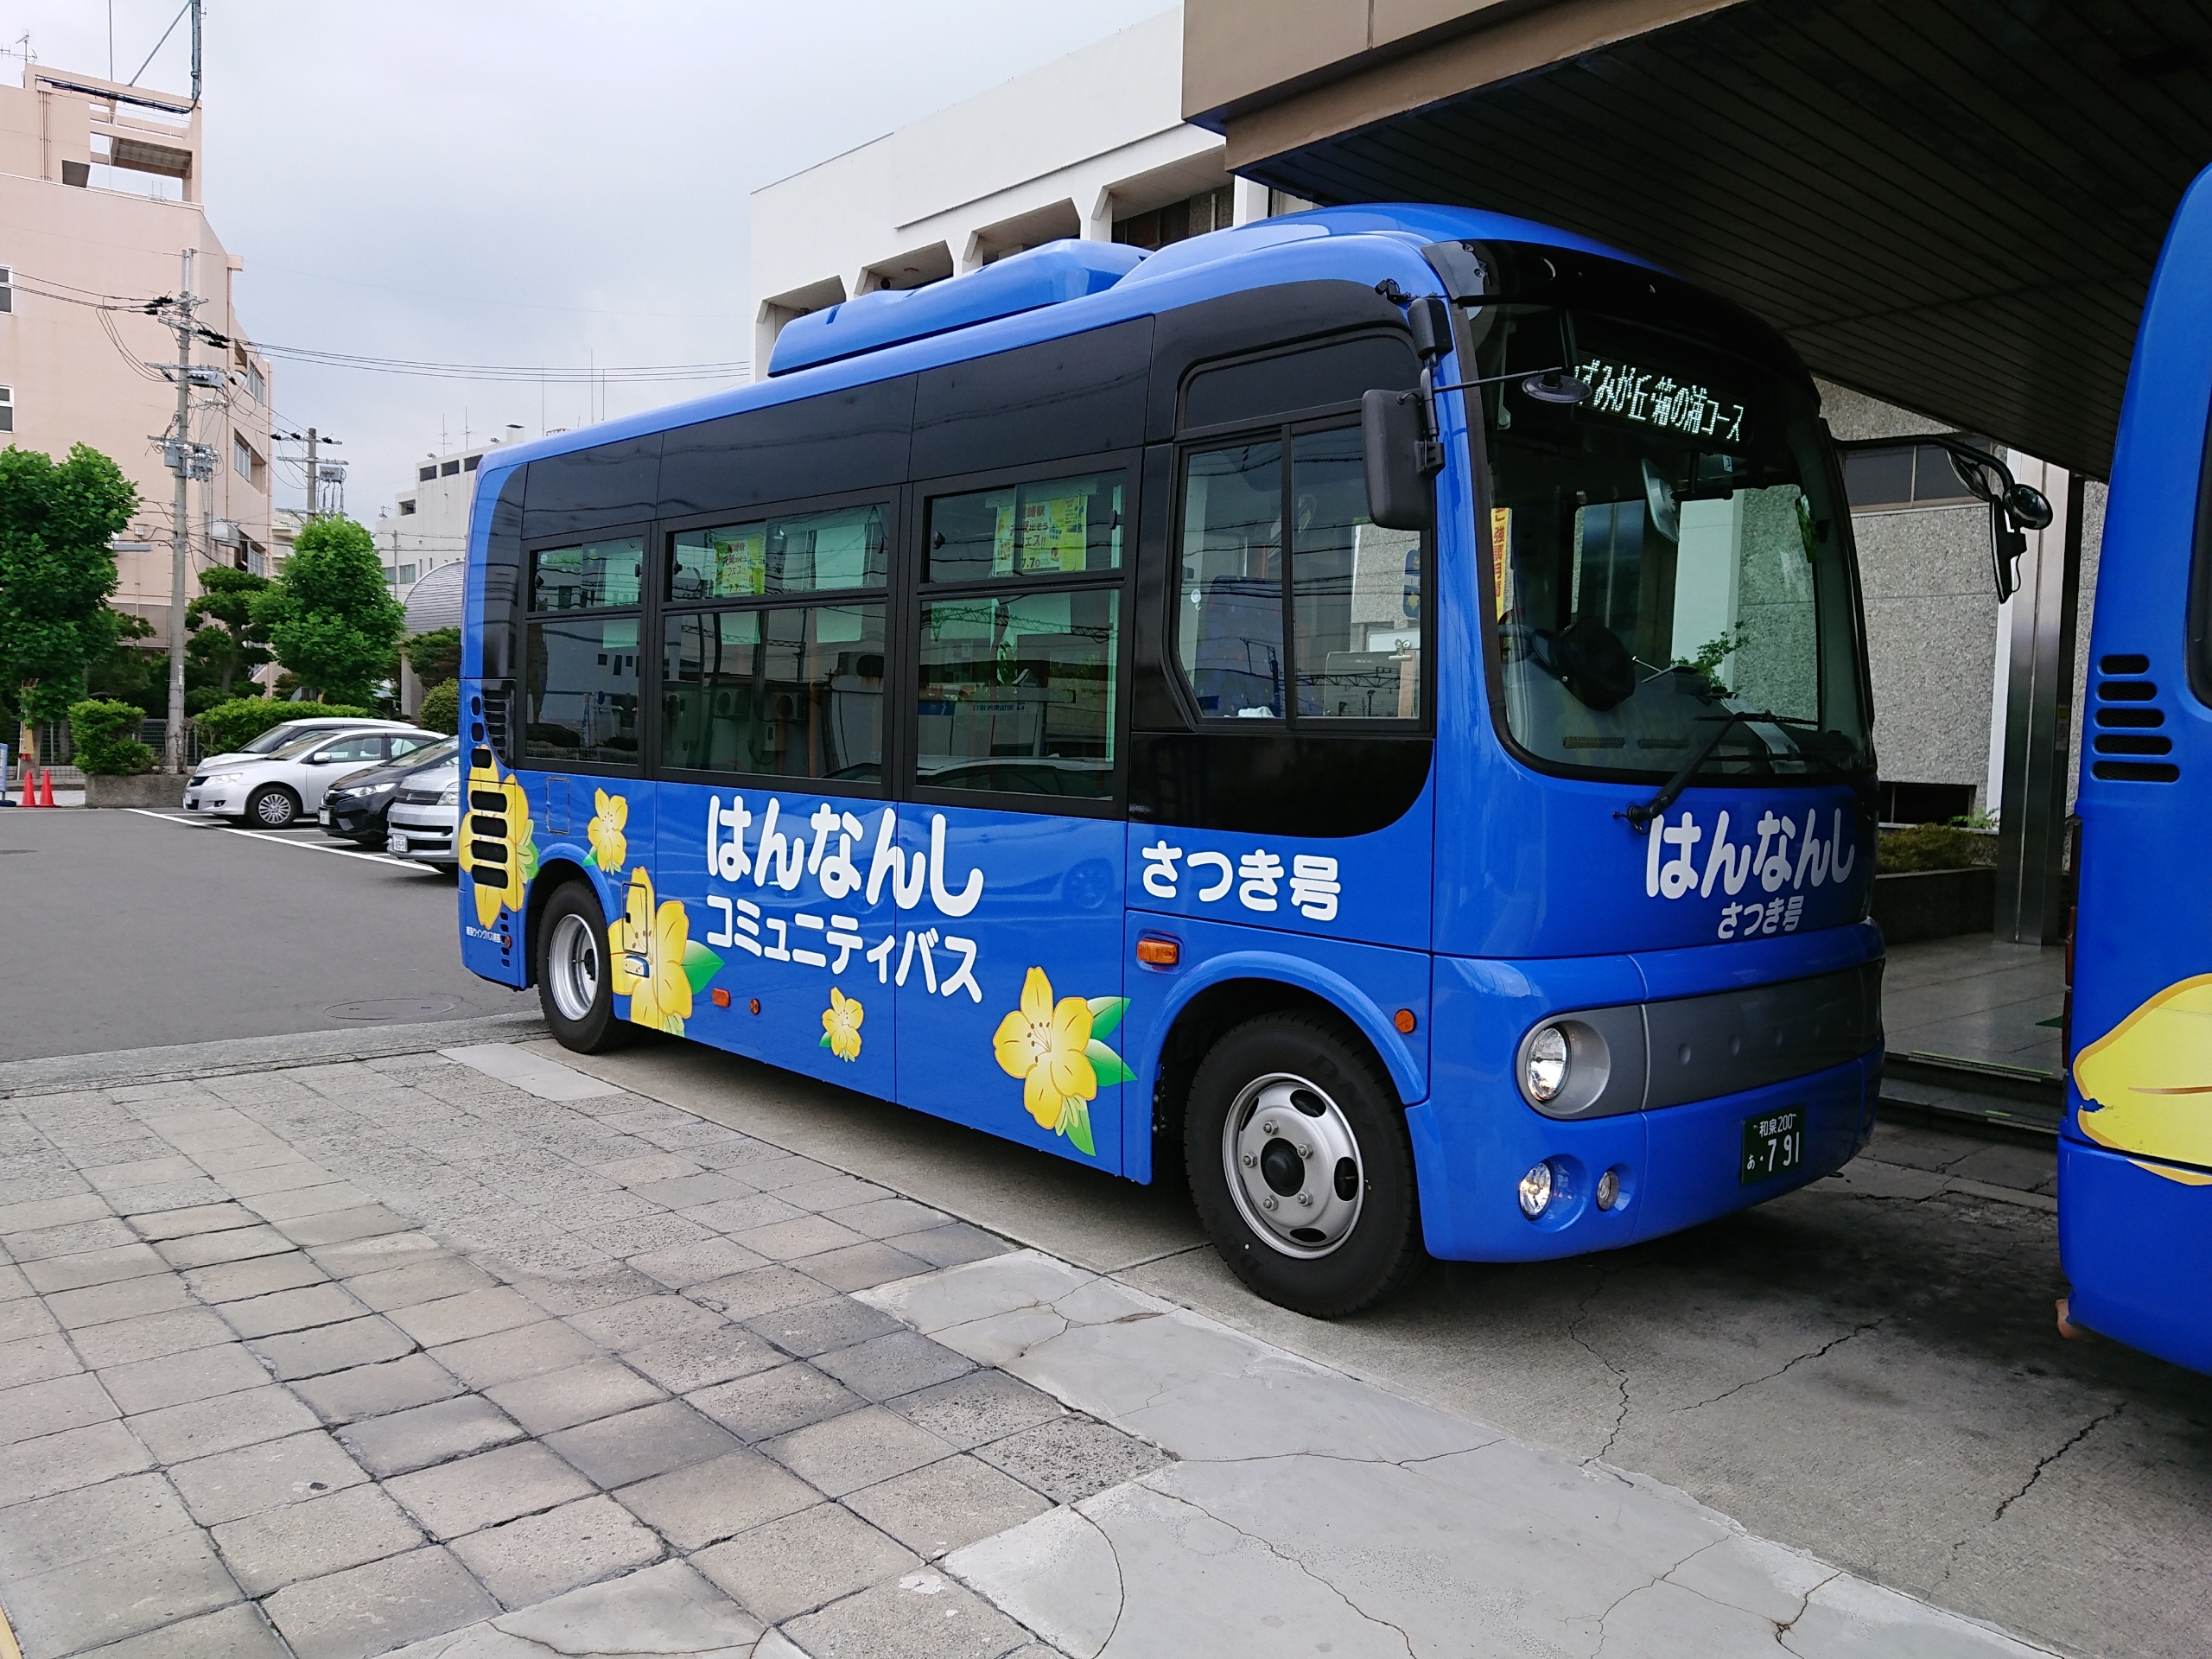 阪南市コミュニティバスの新 旧車両を阪南市役所でみる 19 6 29 阪和線の沿線から